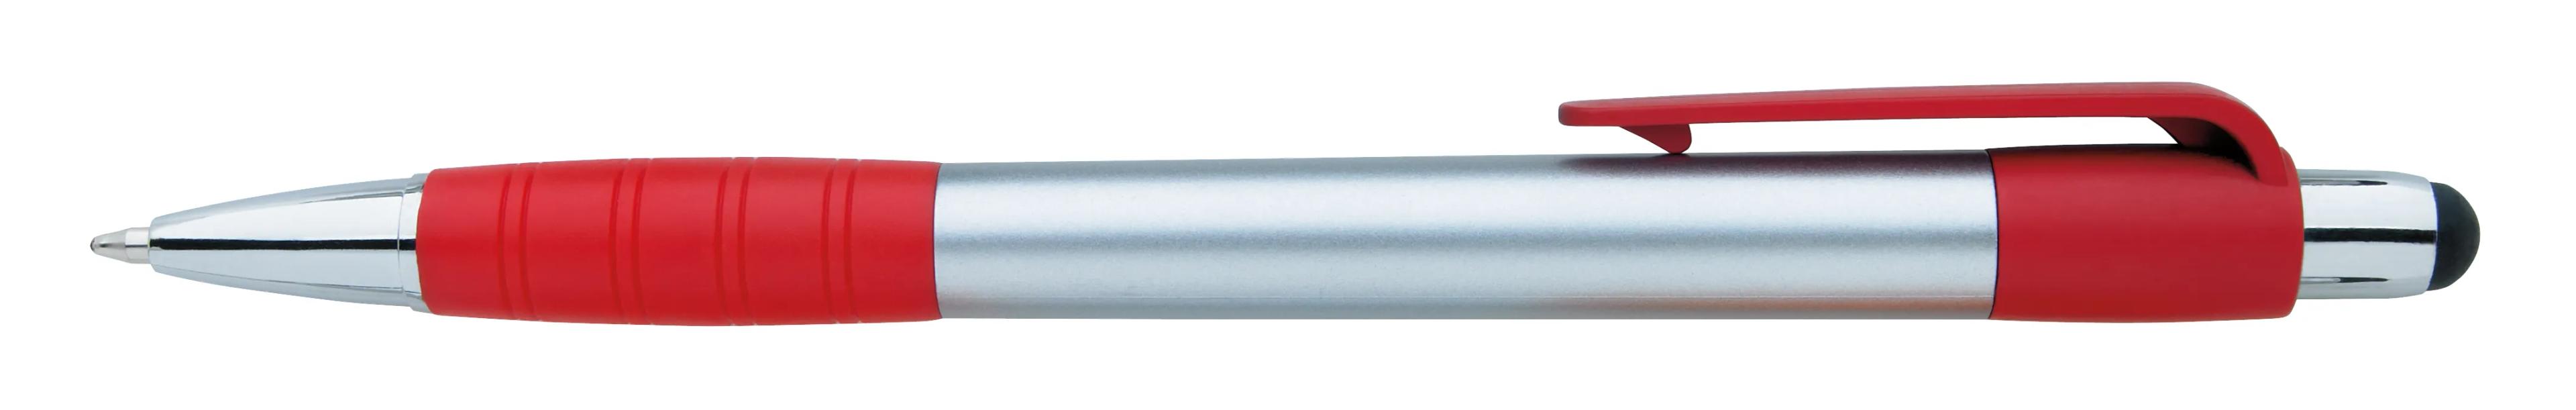 Silver Element Stylus Pen 20 of 53